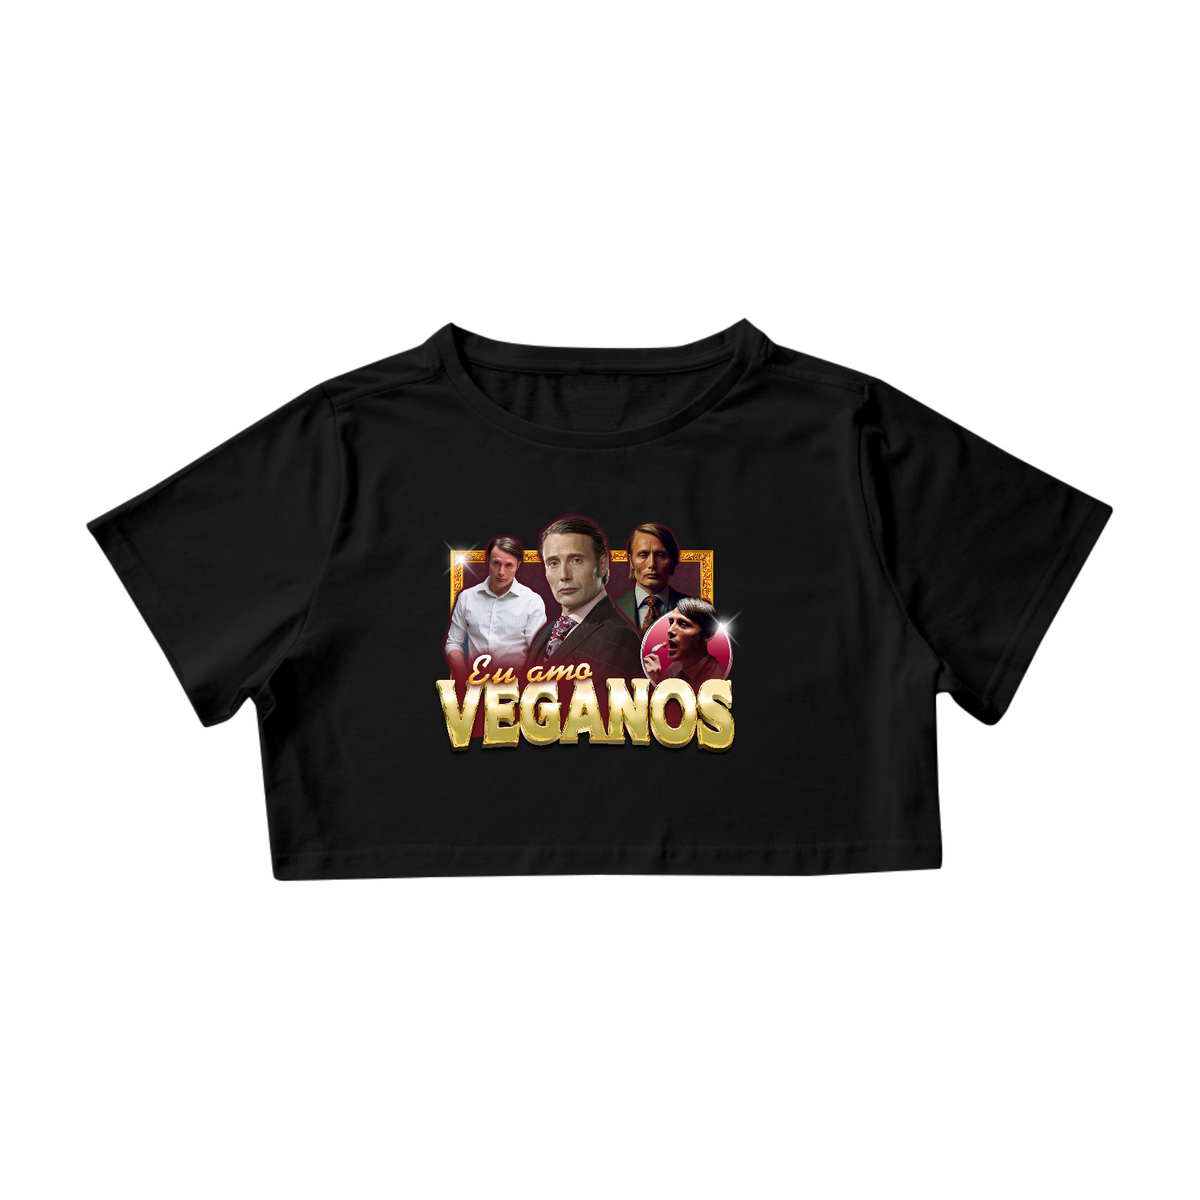 Nome do produto: Eu amo Veganos